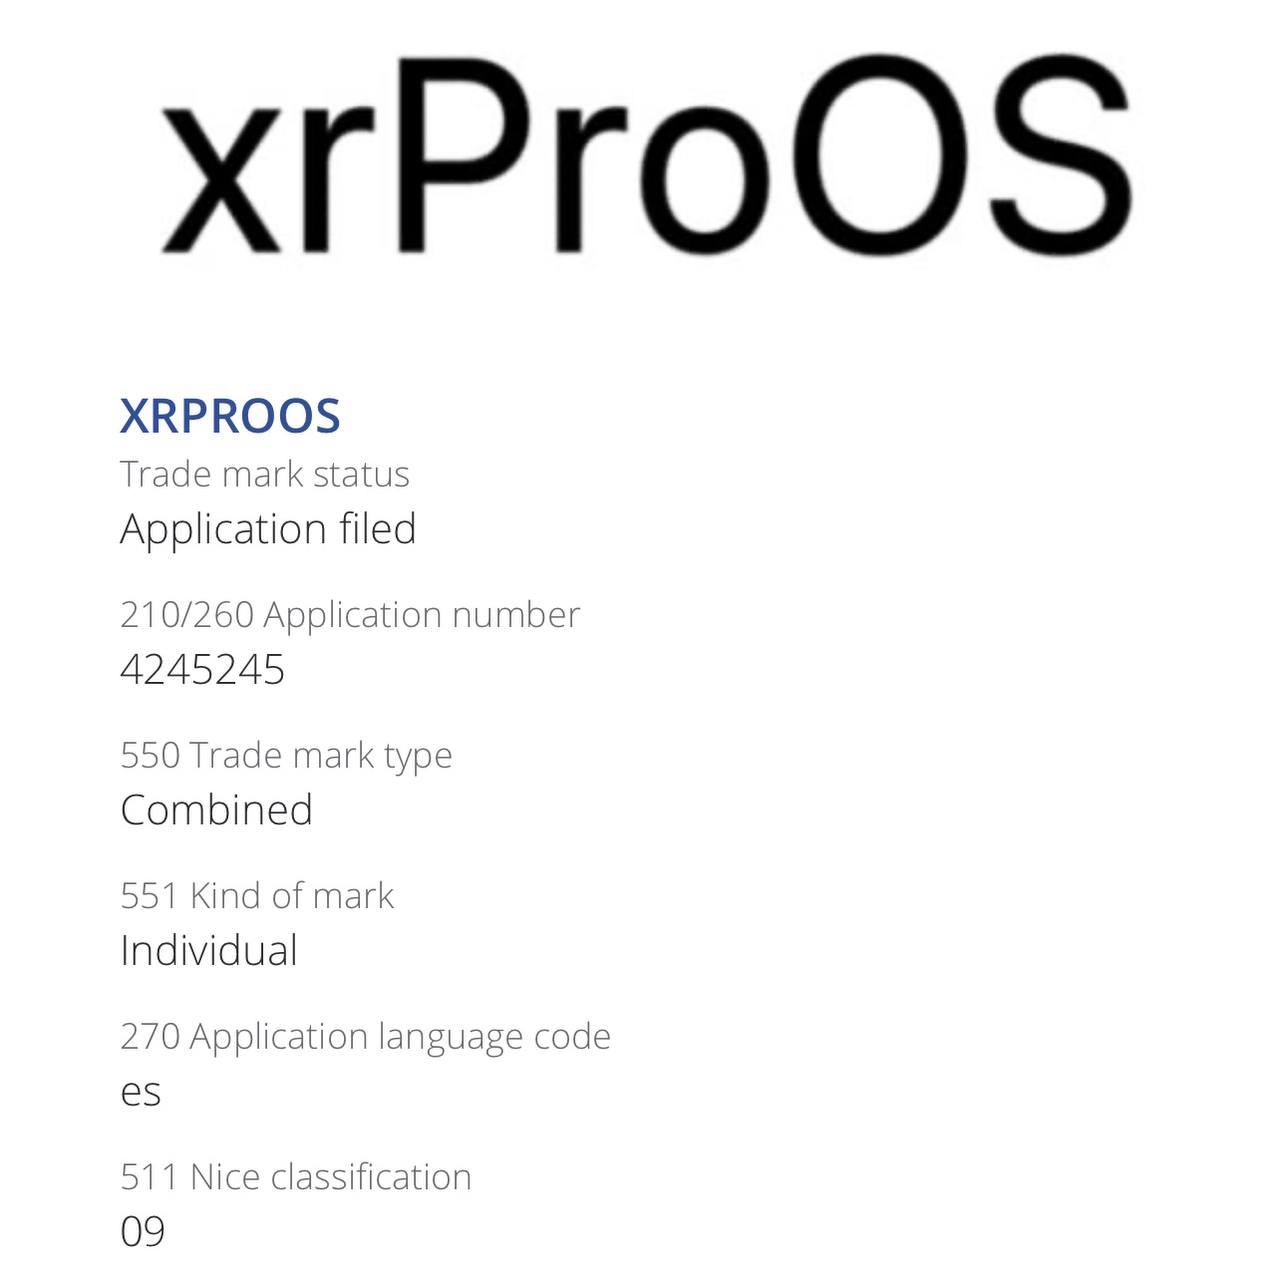 Патент на торговый знак xrProOS зарегистрированный по той же схеме в других странах при помощи дочерней компании.